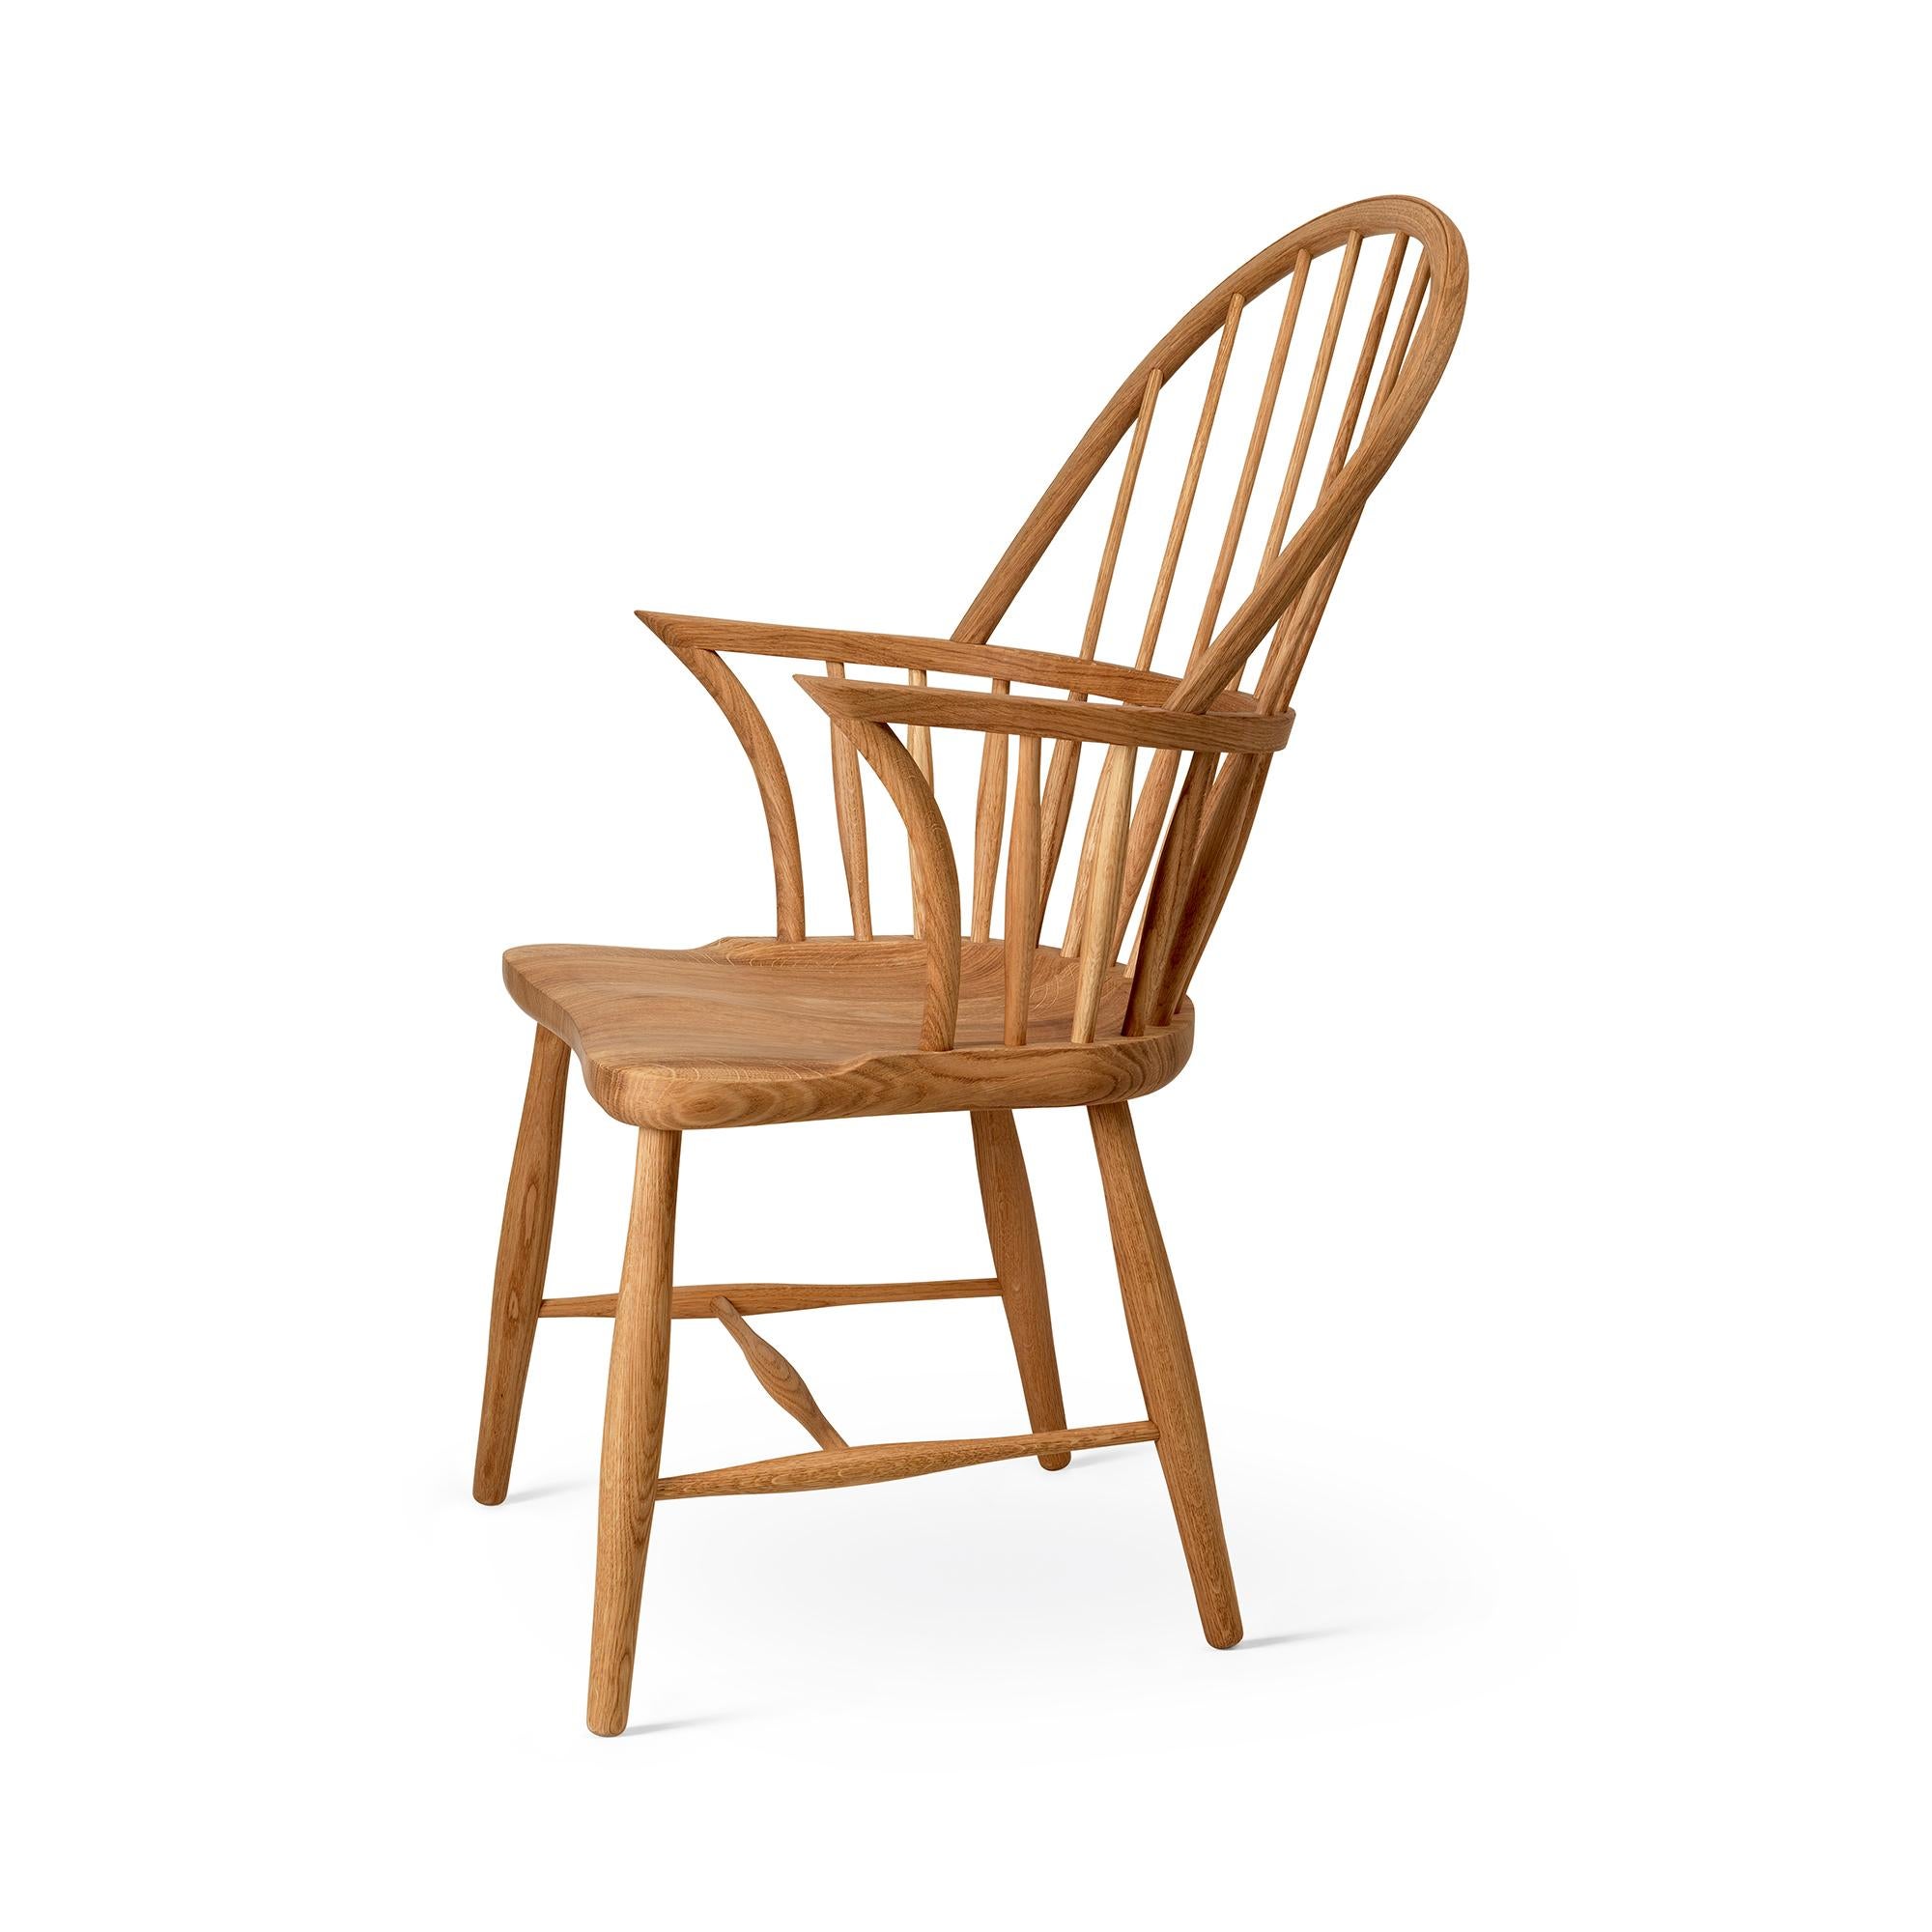 Frits Henningsen 'FH38 Windsor' Chair in Soaped Oak for Carl Hansen & Son For Sale 5